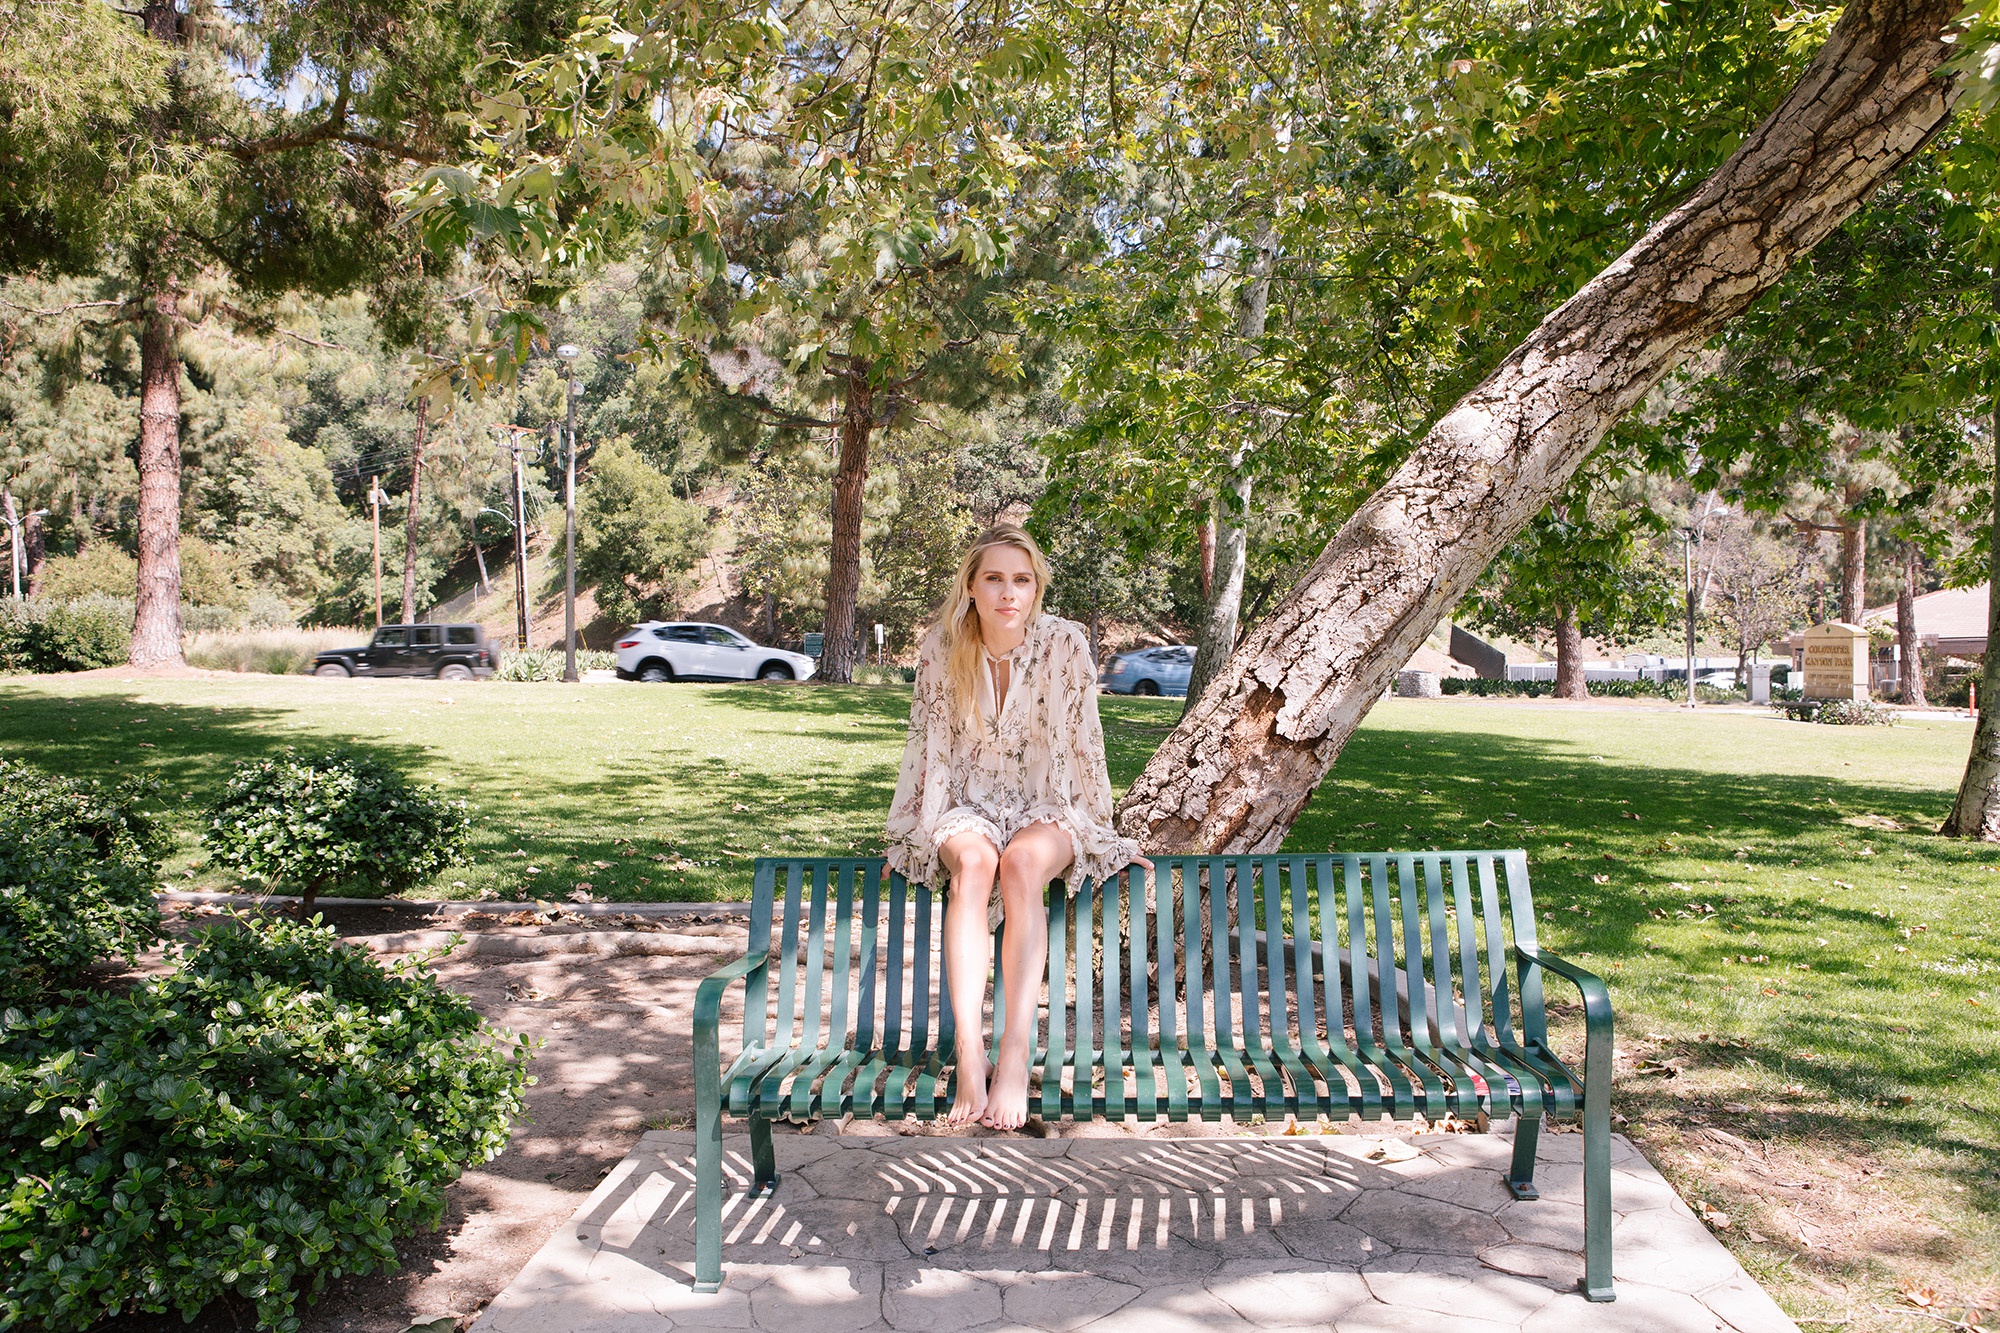 Блондинка раздвигает ноги на скамейке в парке